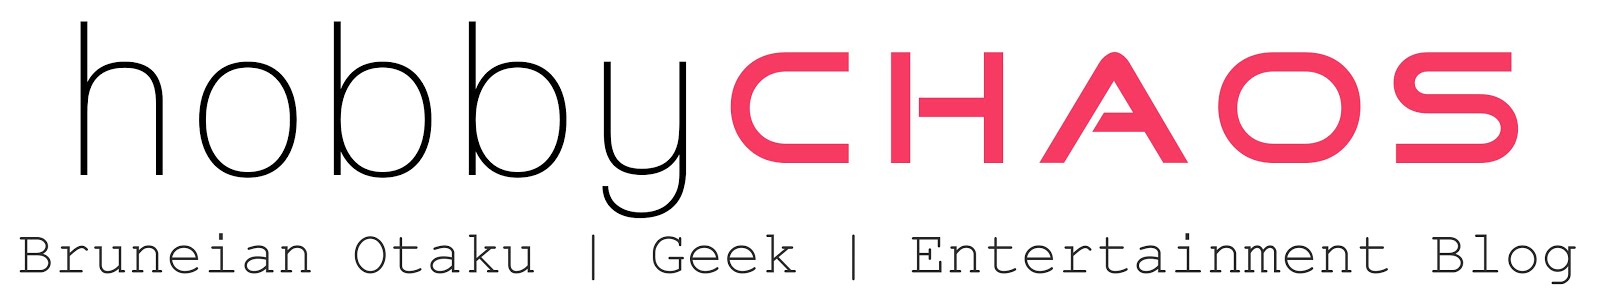 HOBBY CHAOS - Bruneian Otaku | Geek | Entertainment Blog